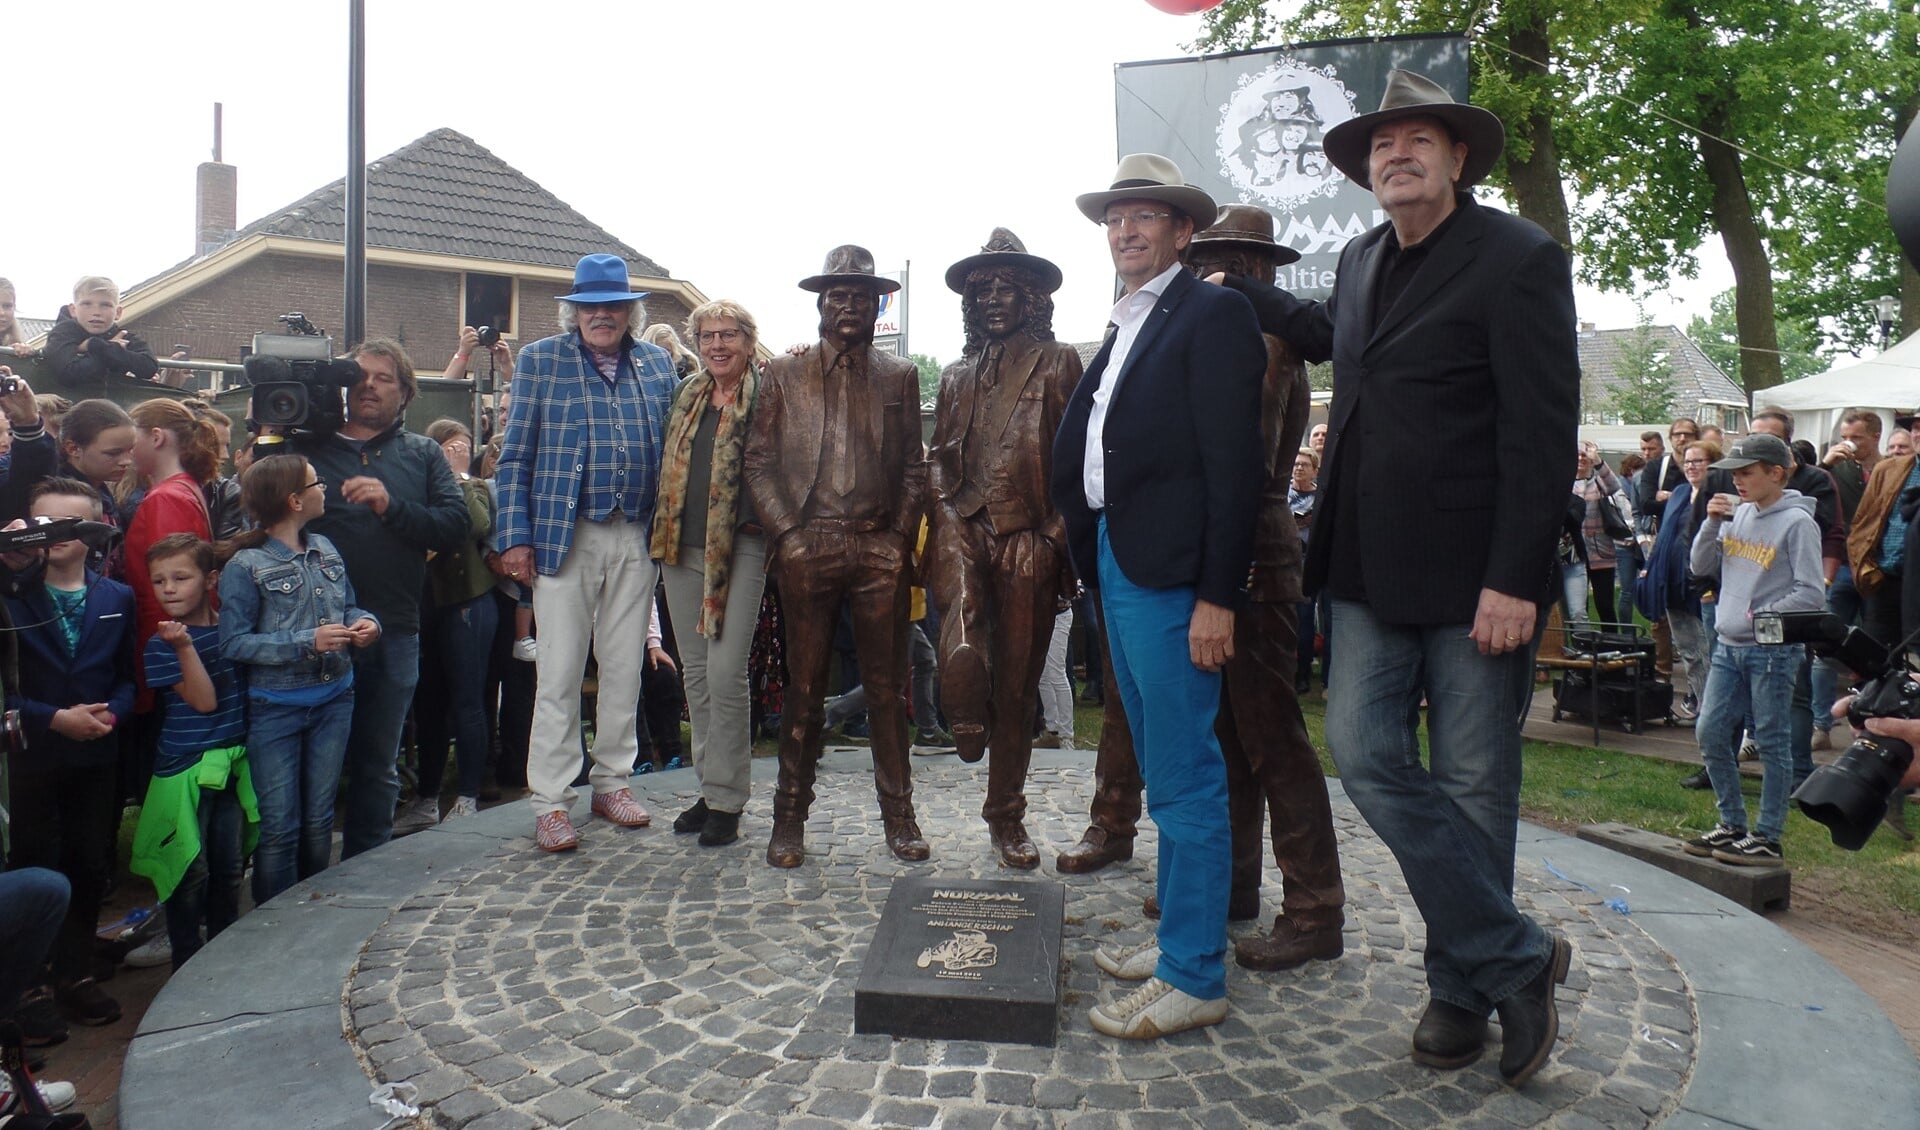 Bennie Jolink, Irma Manschot, Ferdi Joly en Willem Terhorst omarmen hun standbeeld. Foto: Henri Walterbos